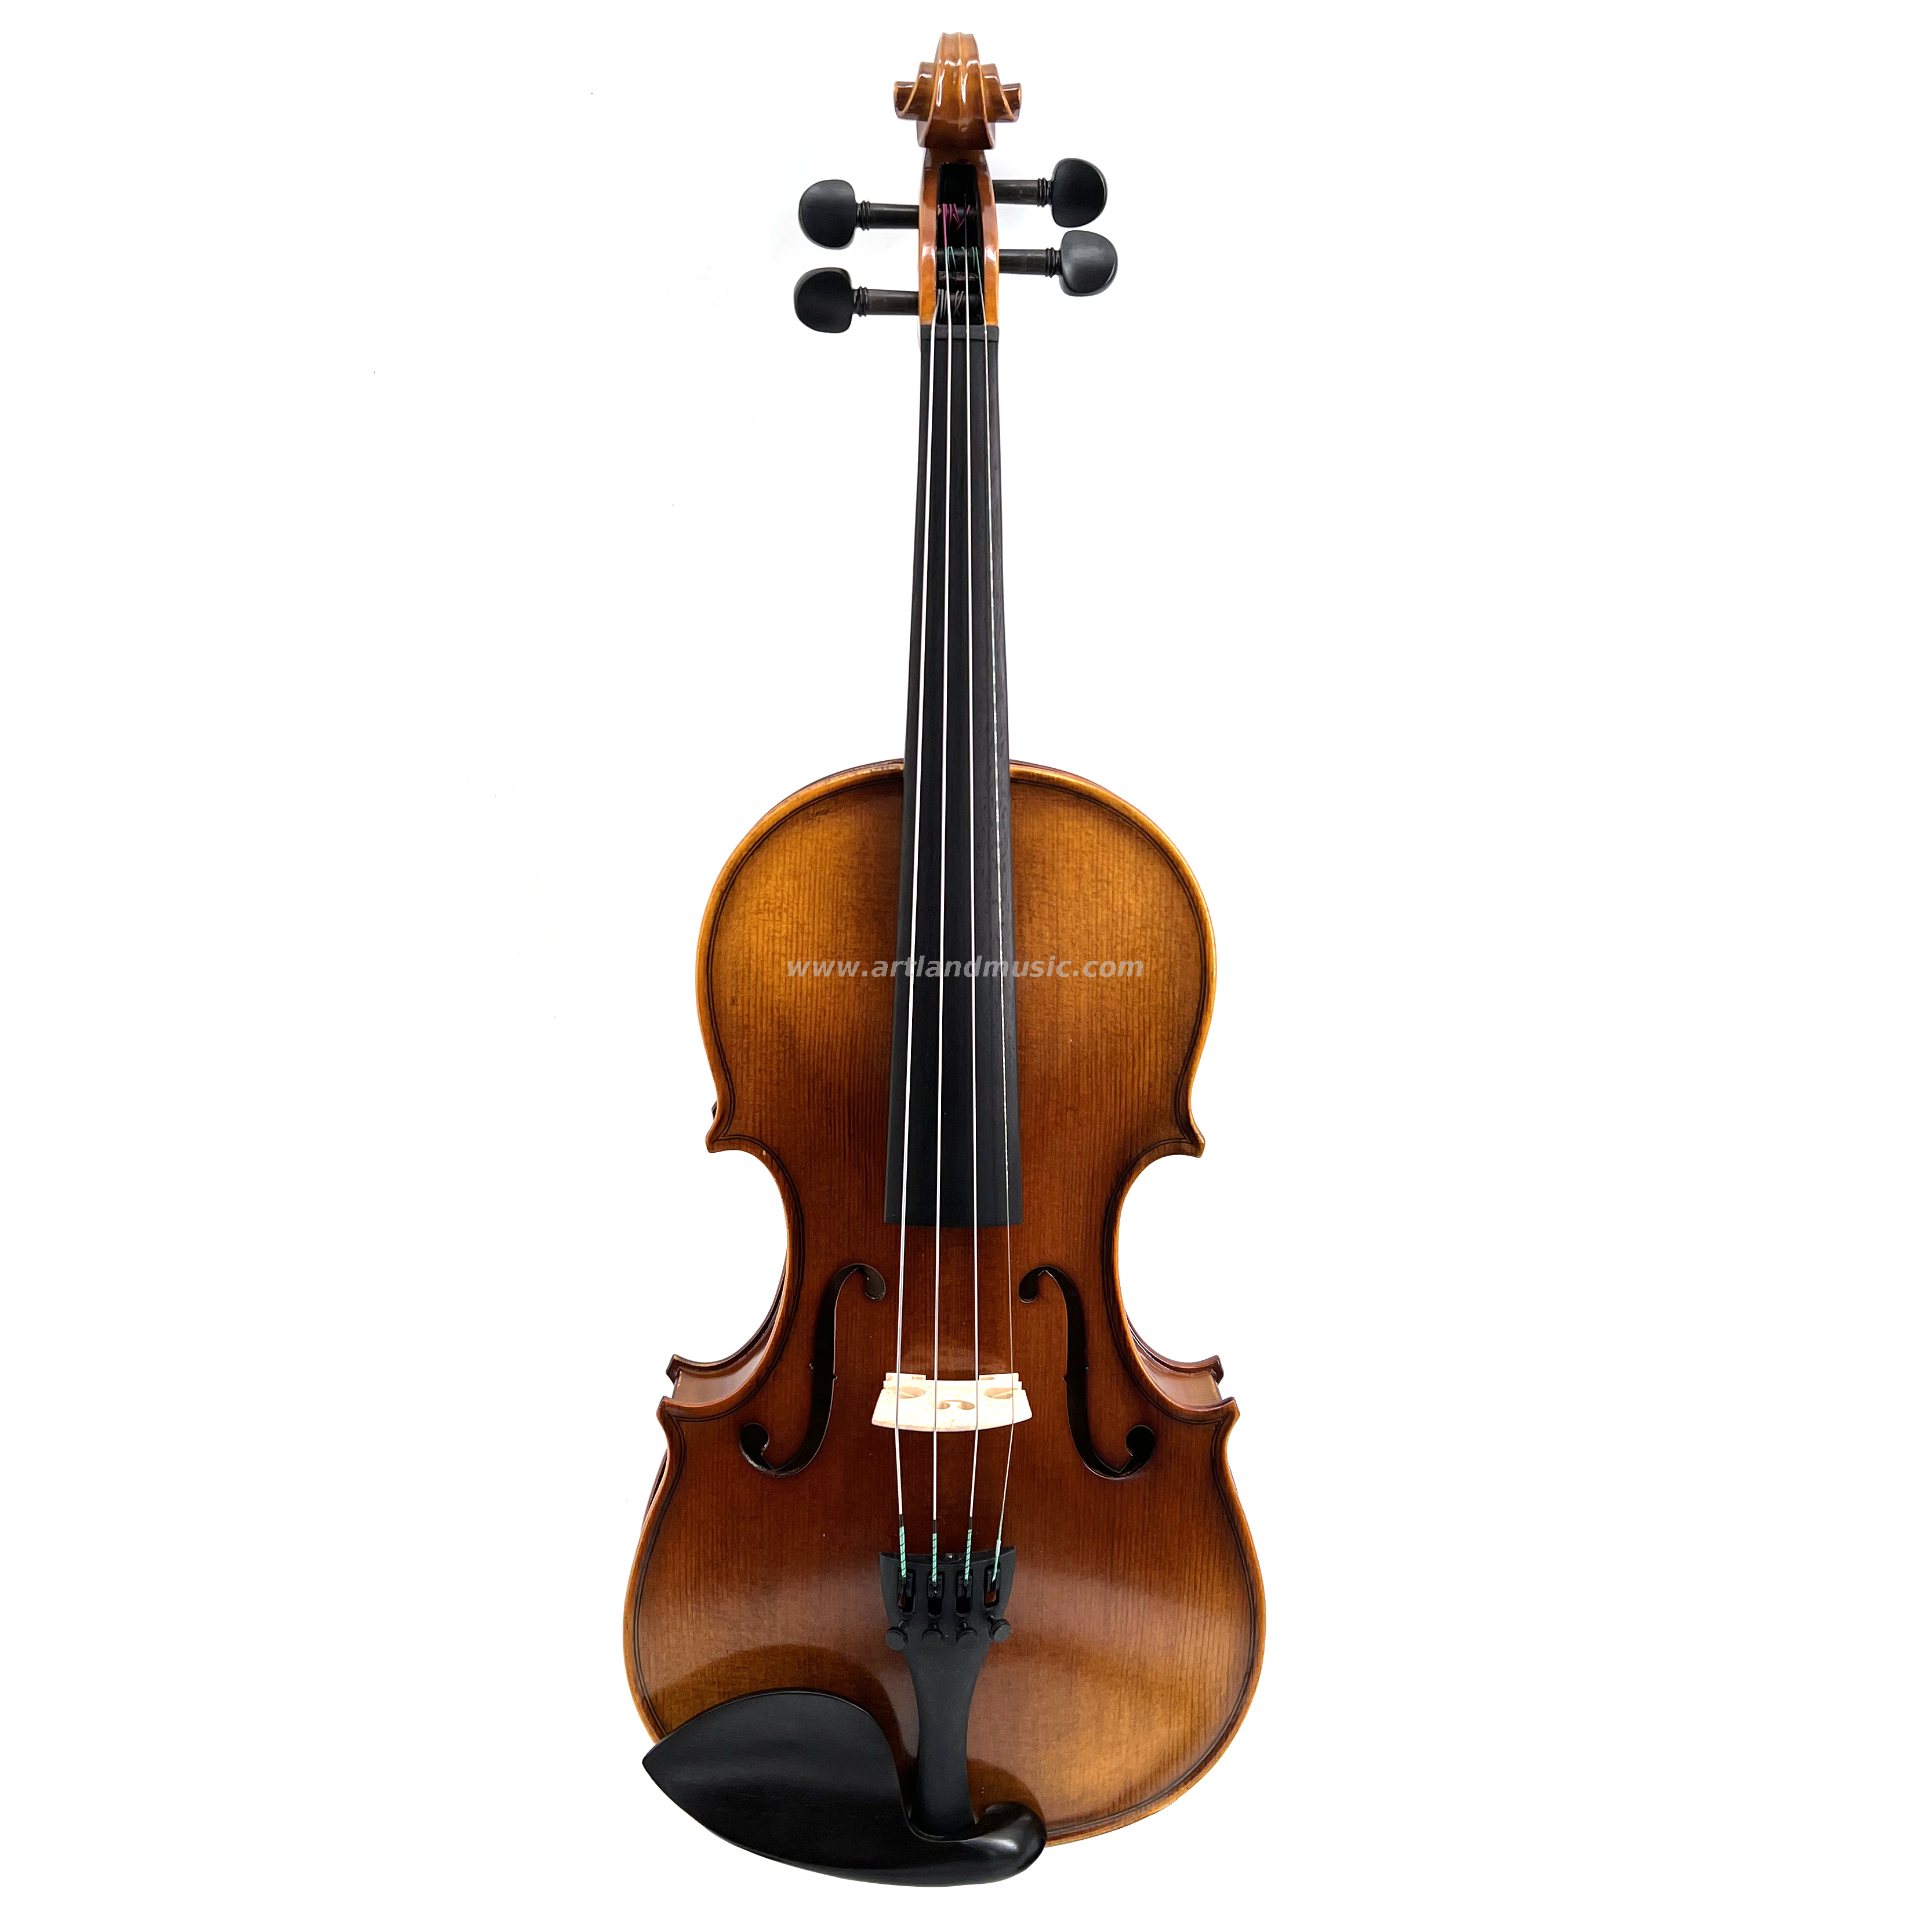 Buen violín moderado de llama con barniz manual y artesanía advocada (MV150H)